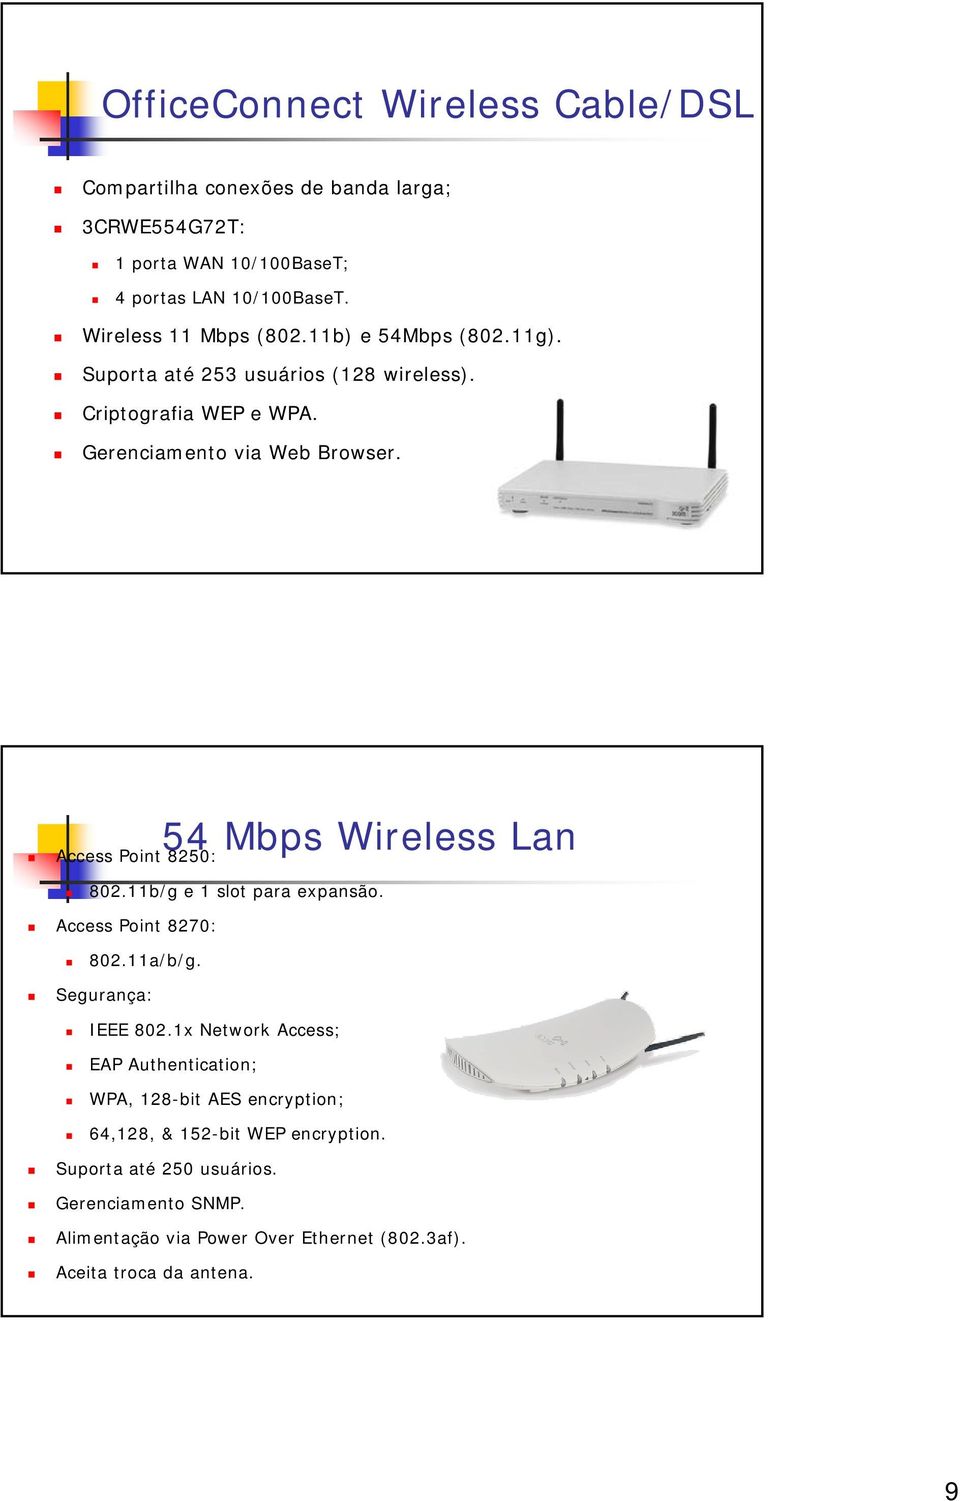 54 Mbps Wireless Lan Access Point 8250: 802.11b/g e 1 slot para expansão. Access Point 8270: 802.11a/b/g. Segurança: IEEE 802.